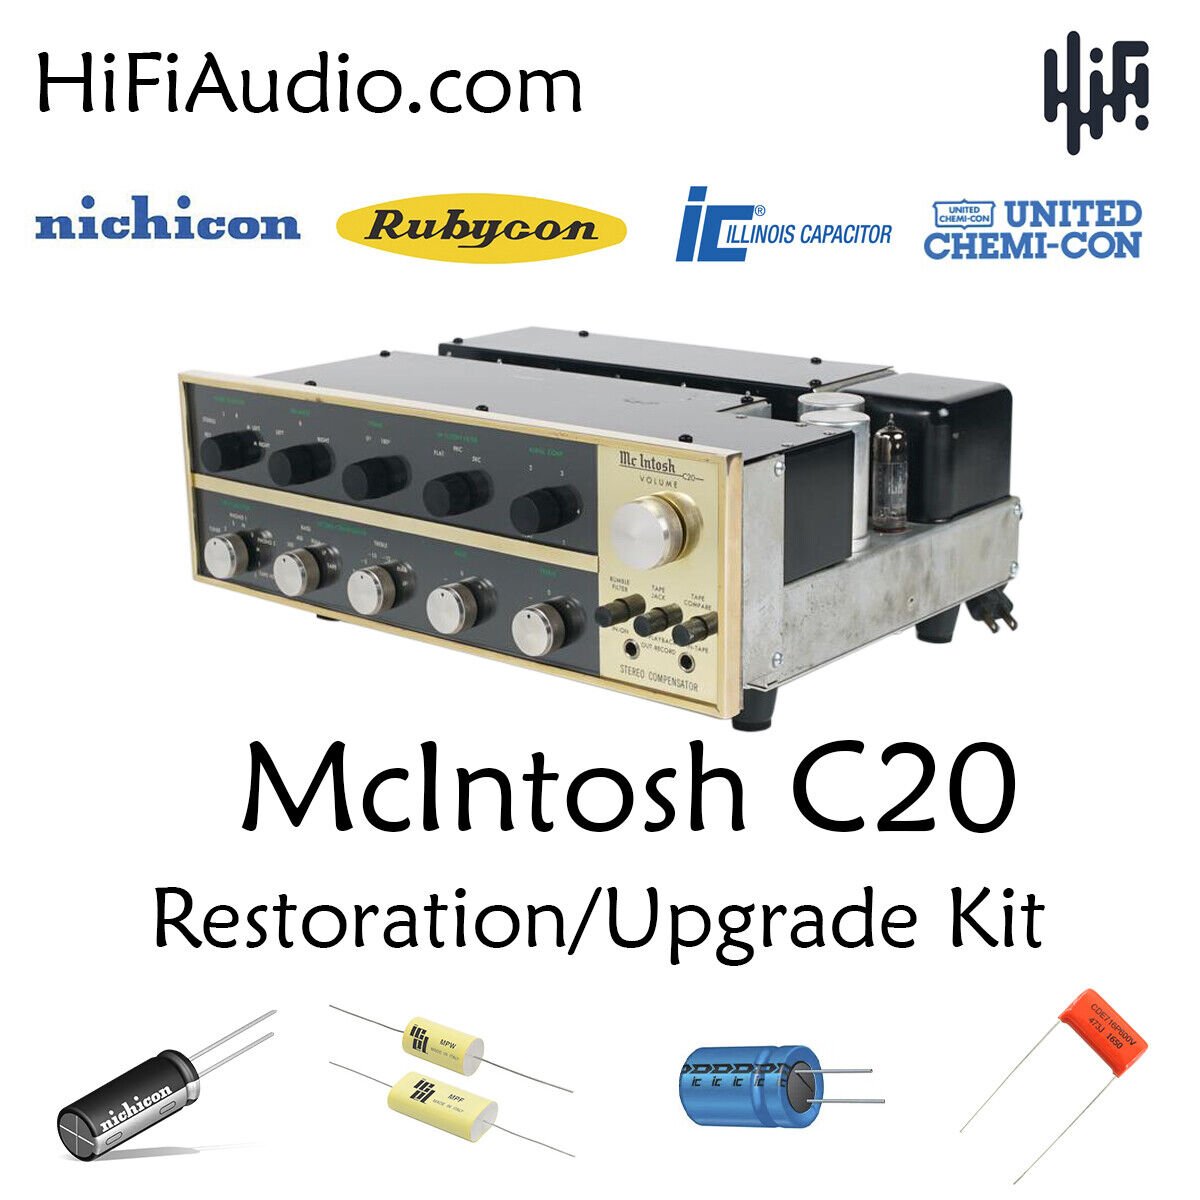 McIntosh C20 restoration kit